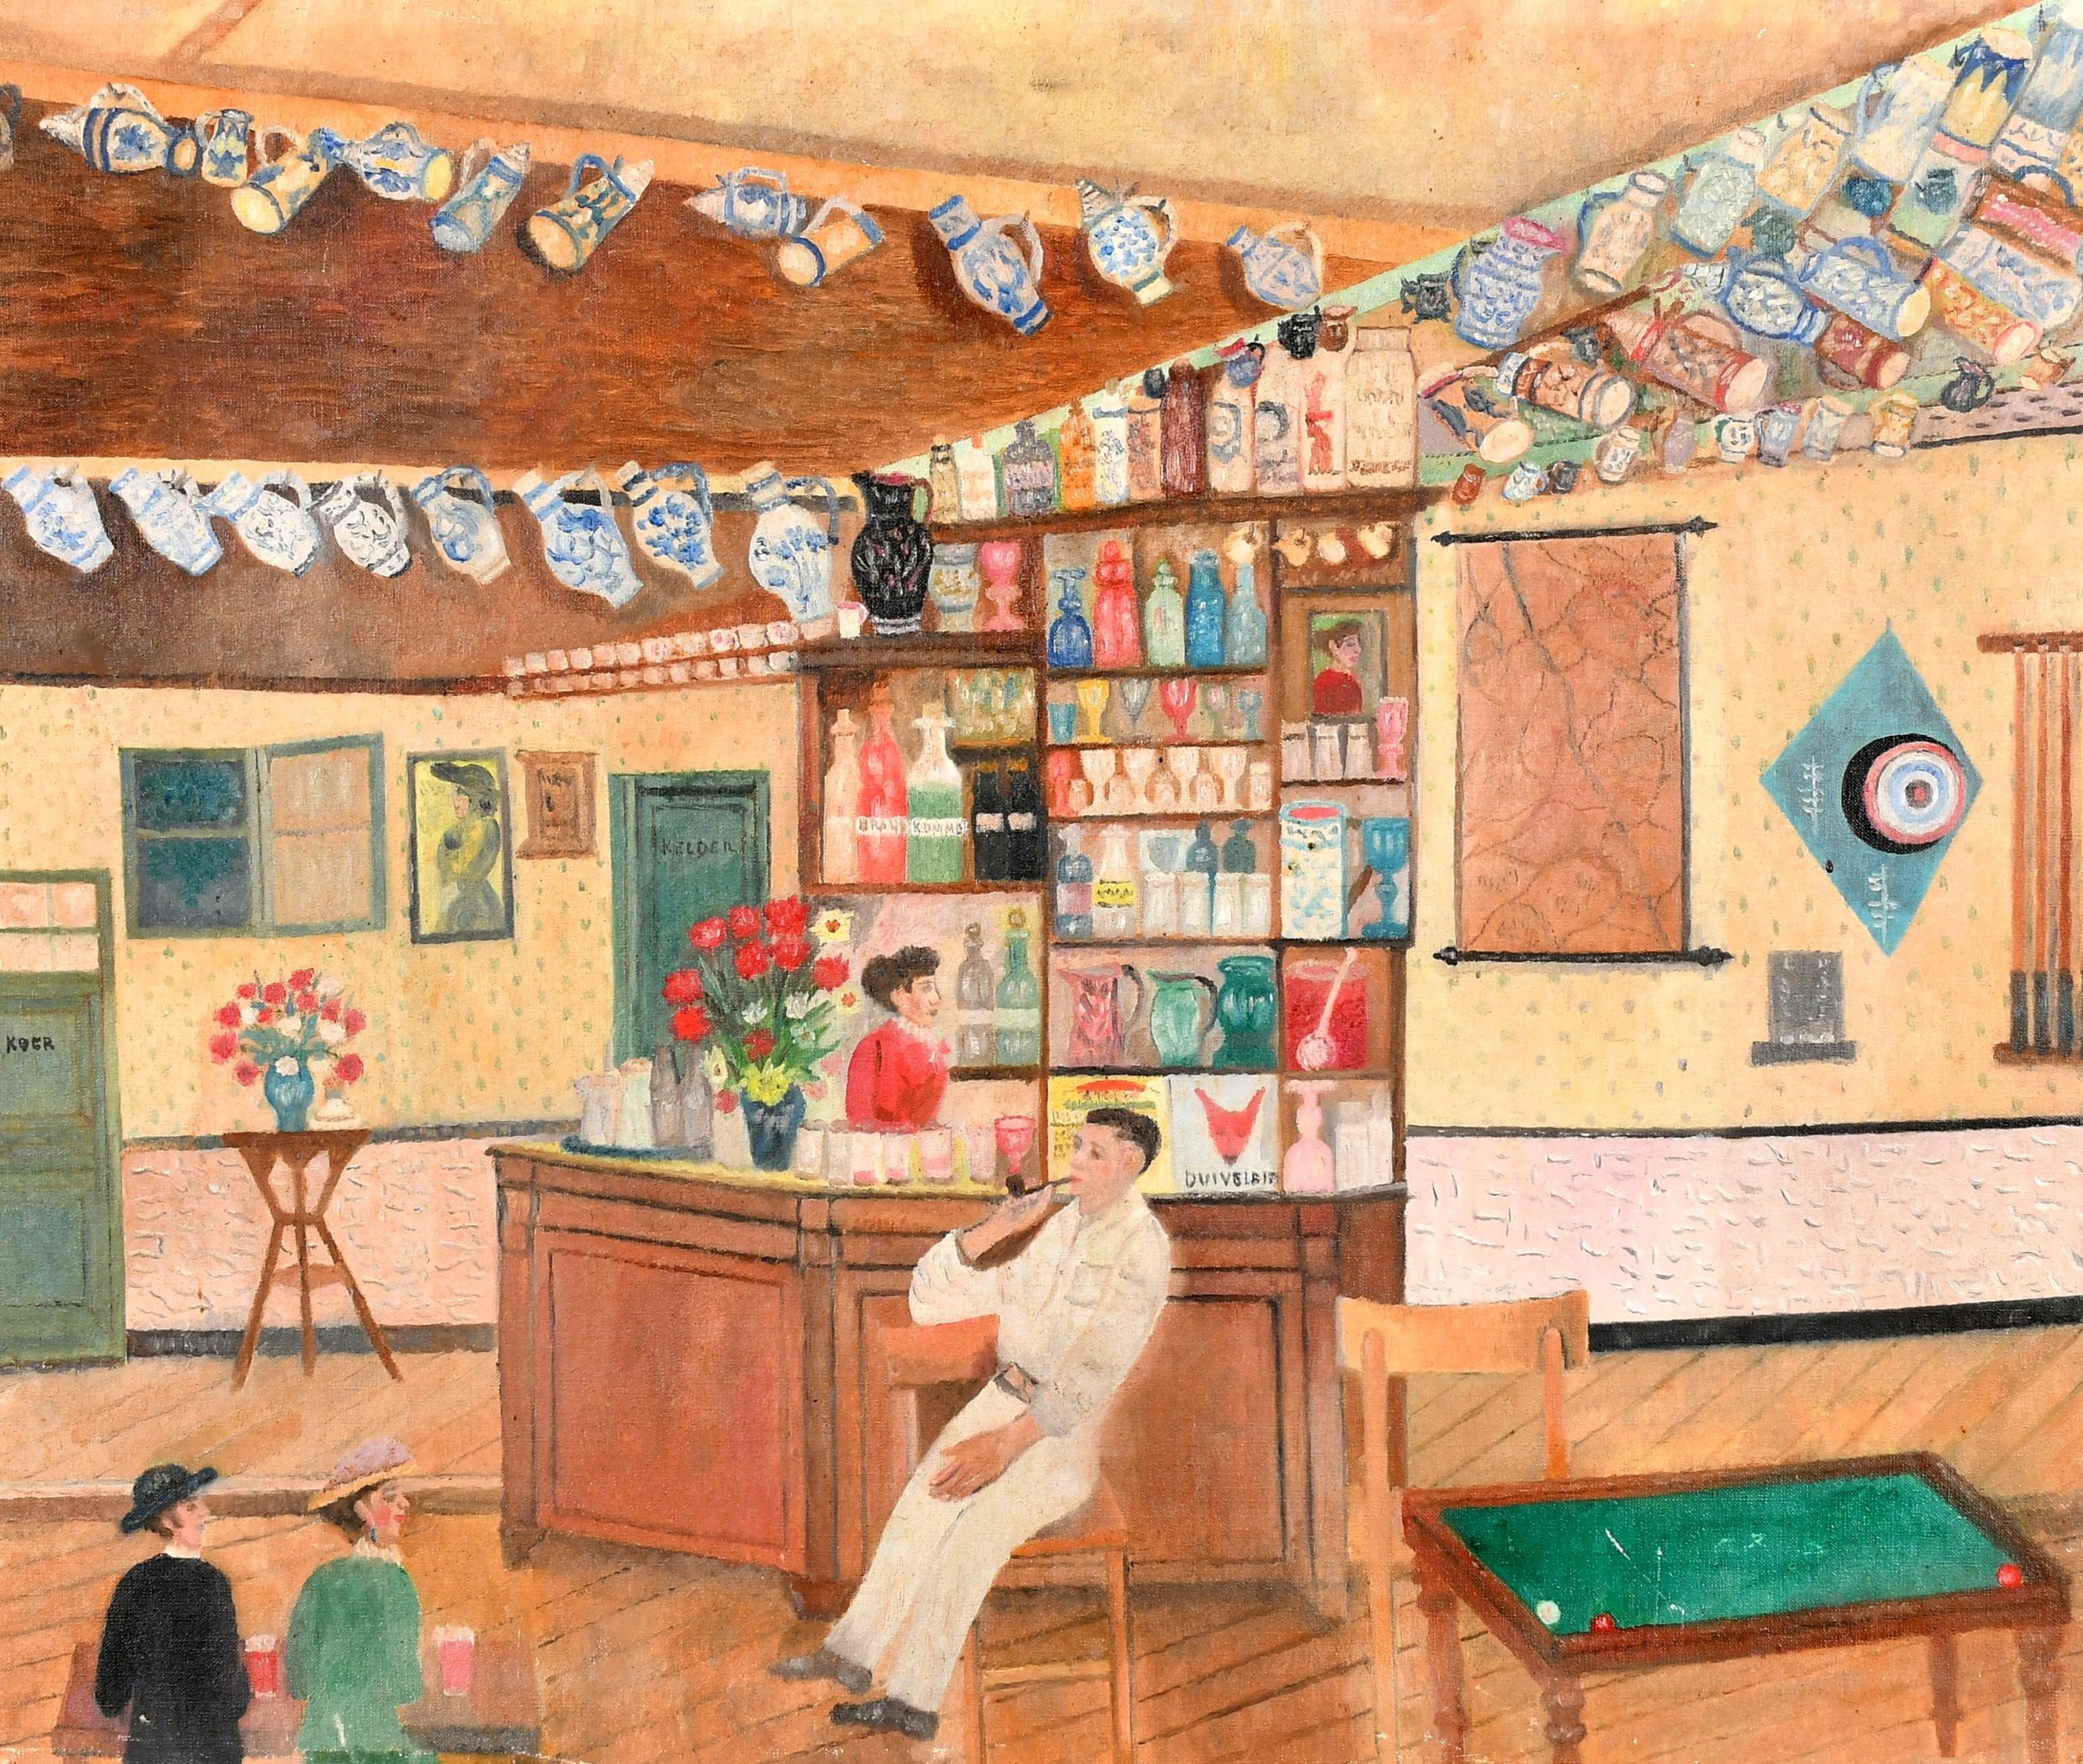 Charmante huile sur toile naïve hollandaise des années 1950 représentant des personnages à l'intérieur d'un bar.  Une belle peinture en très bon état d'origine.

Artistics : École hollandaise, milieu du 20e siècle
Titre : Le Bar
Médium : Huile sur